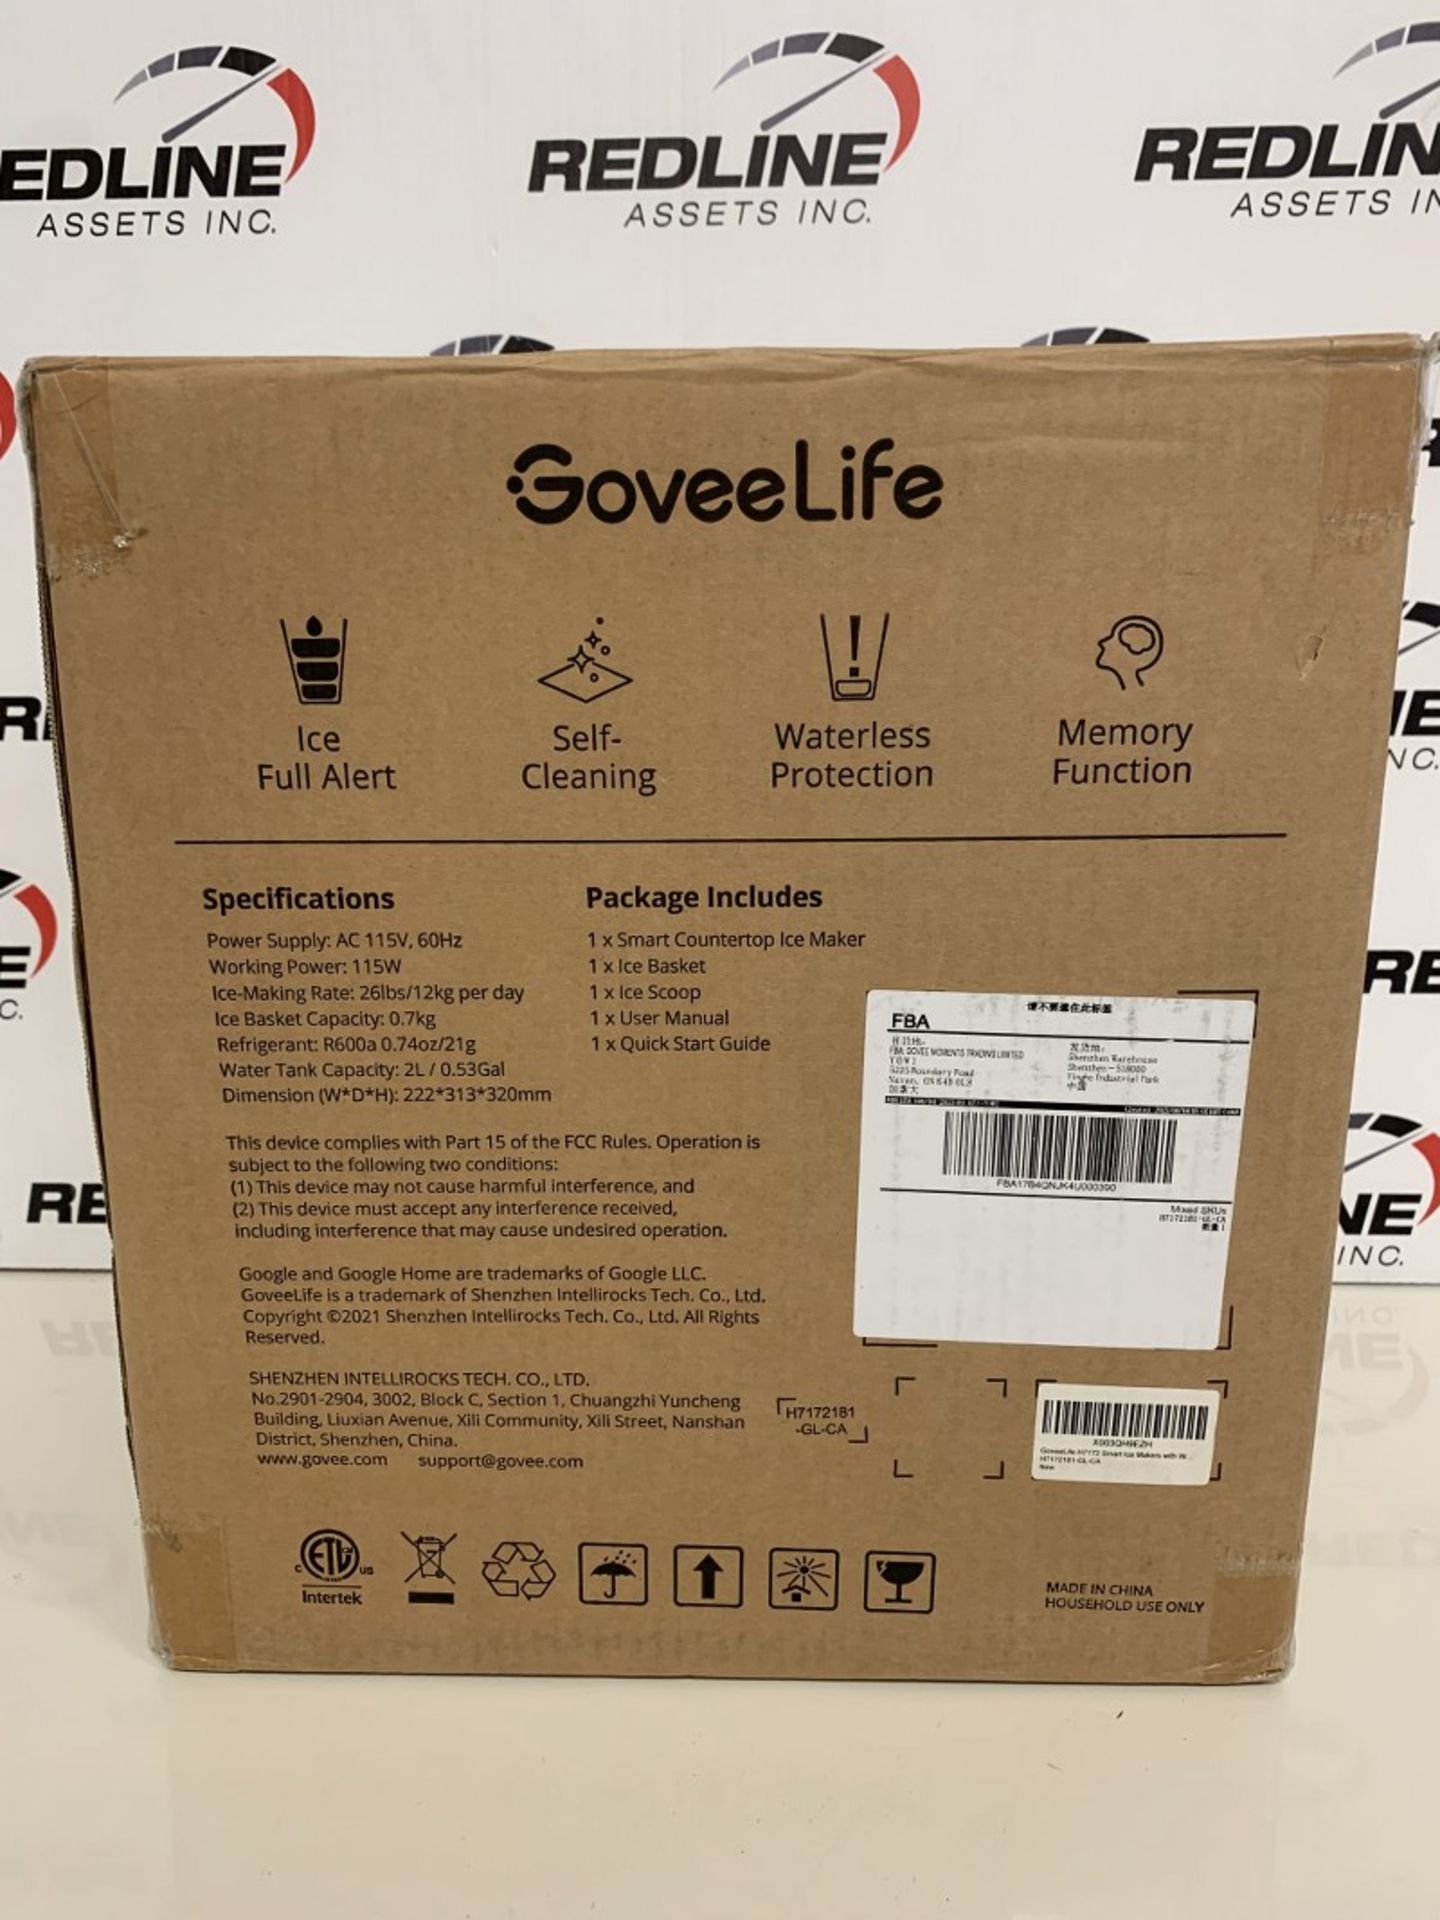 Groveelife - Smart Countertop Ice Maker - H7172 - Image 2 of 2